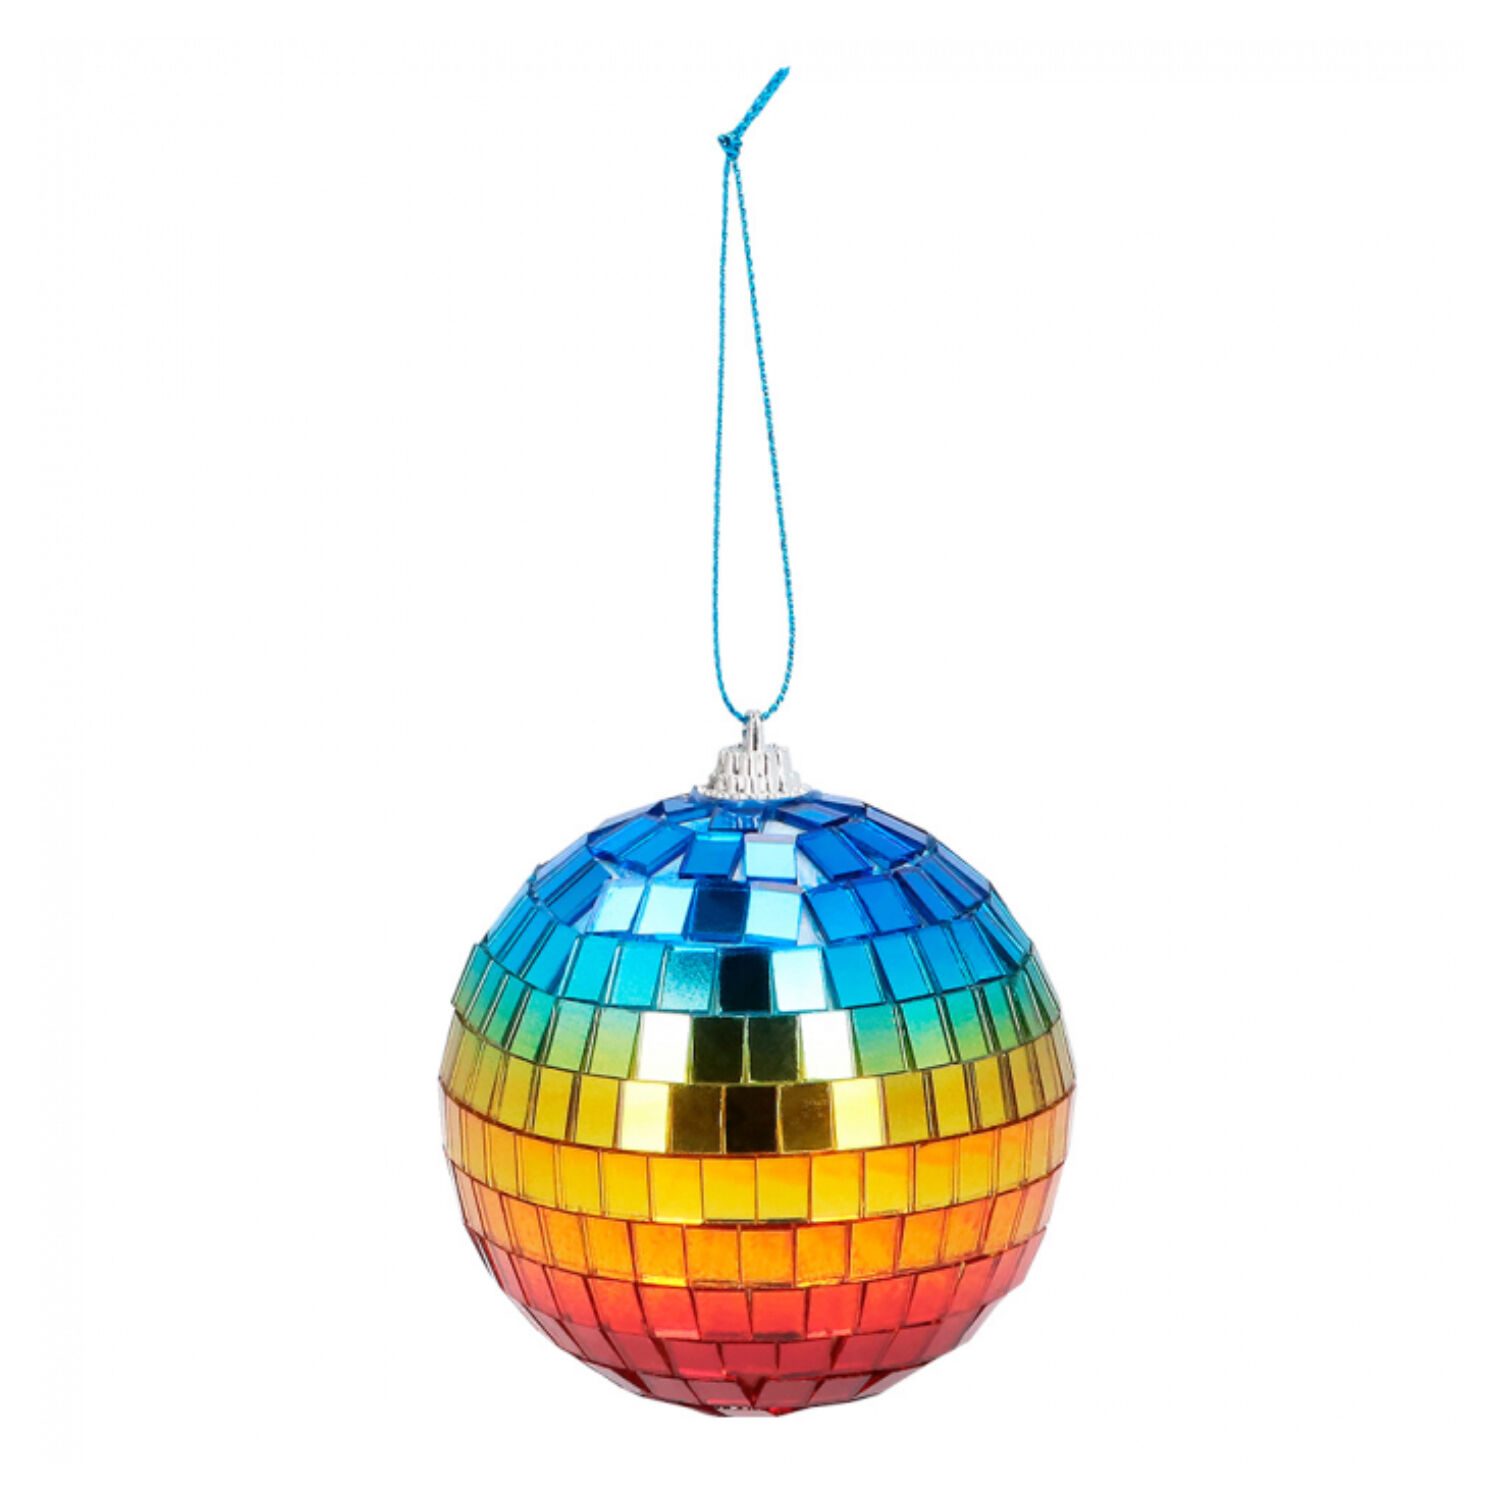 NEU Mini-Disco-Kugeln regenbogen, 8cm, mit Aufhänger, 6 Stück - Party-Dekoration  Regenbogen / Pride Motto-Party Produkte 